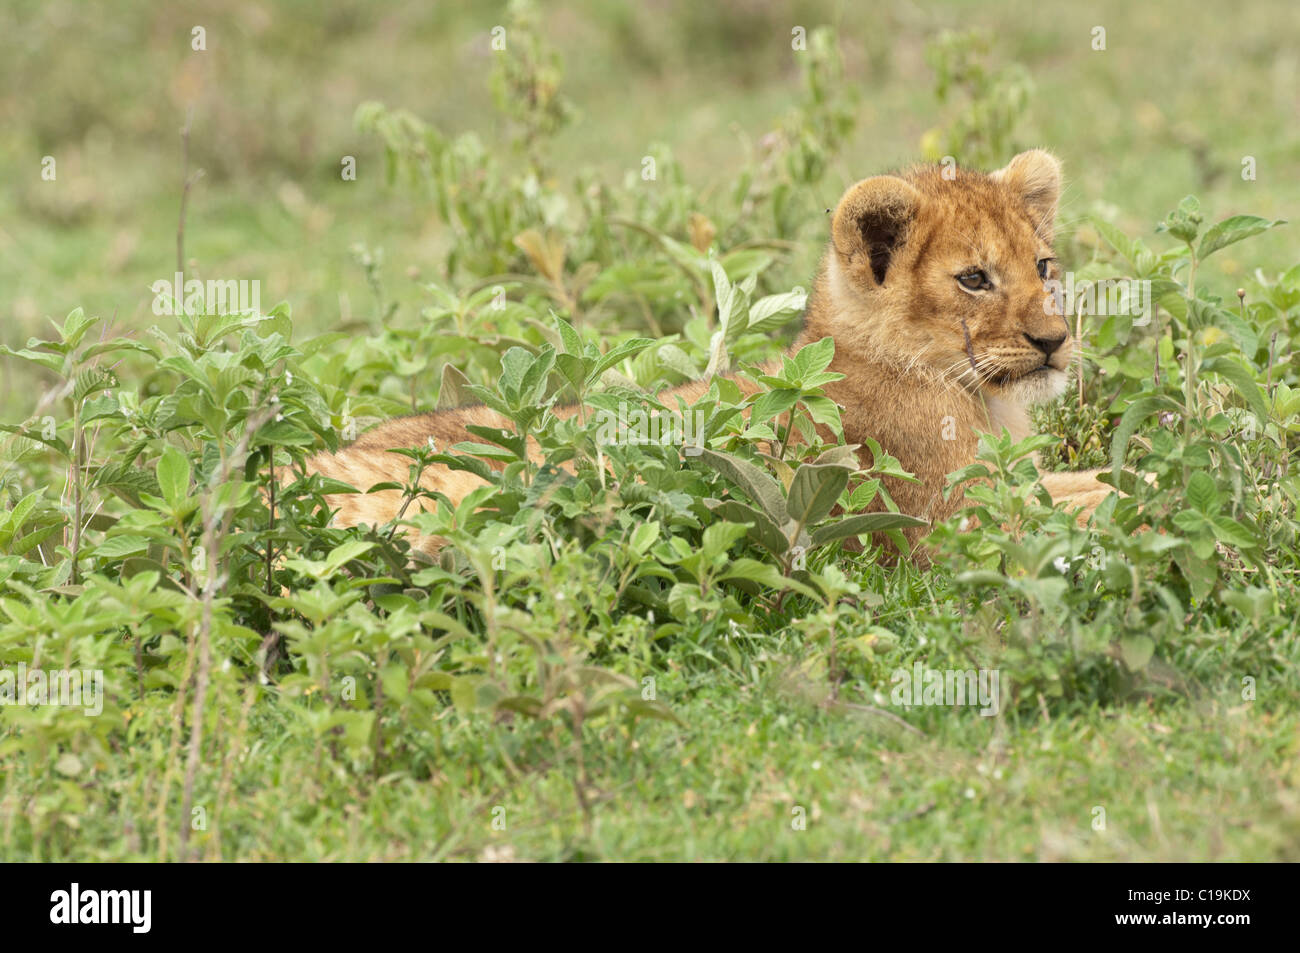 Foto di stock di un Lion cub appoggiata nella verde vegetazione. Foto Stock